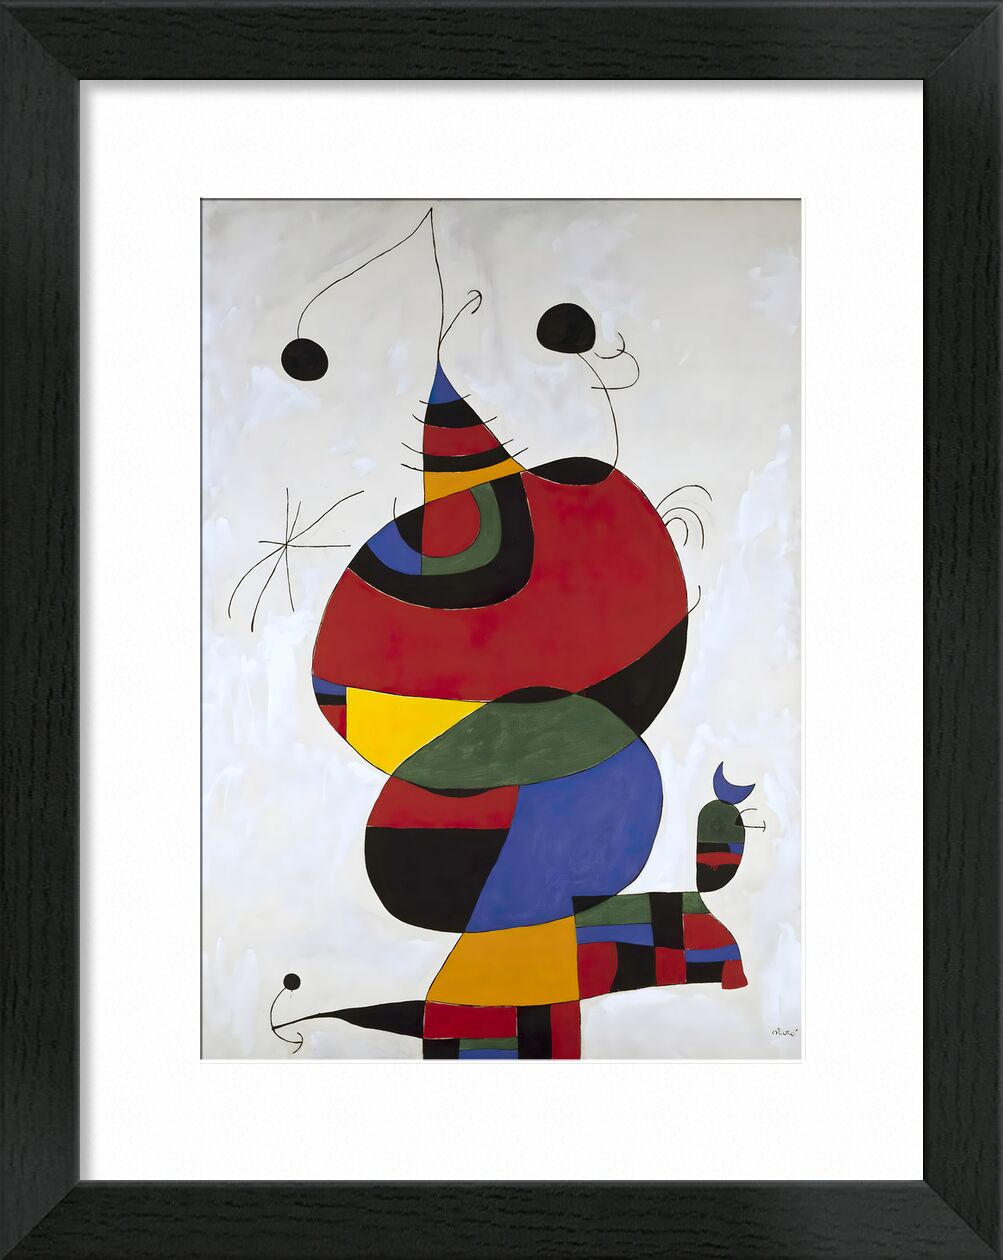 Hommage a Picasso - Joan Miró von Bildende Kunst, Prodi Art, Tribut, Joan Miró, Bleistiftzeichnung, Porträt, Picasso